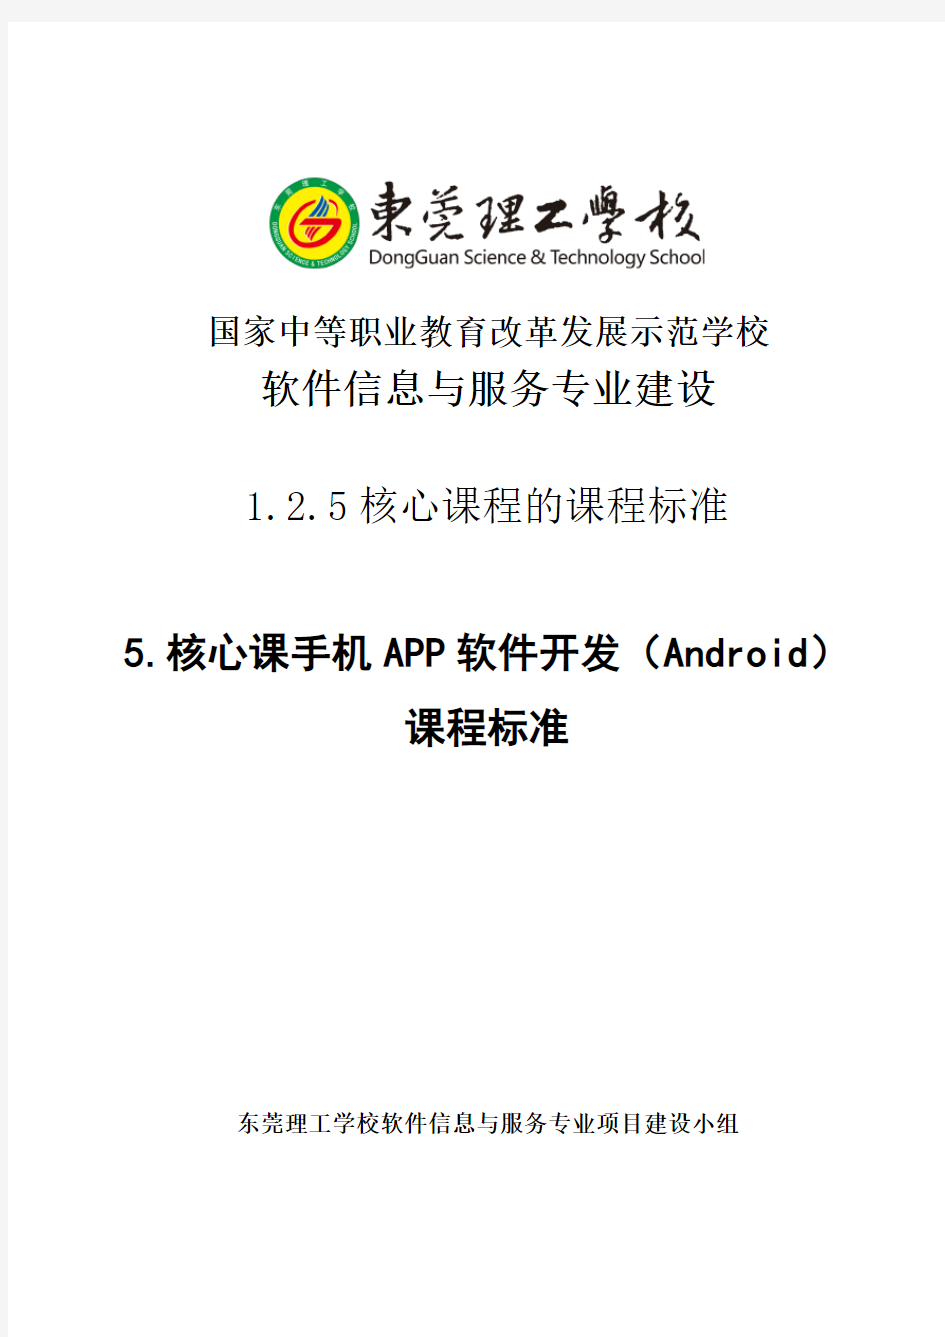 手机APP软件开发(Android)课程标准